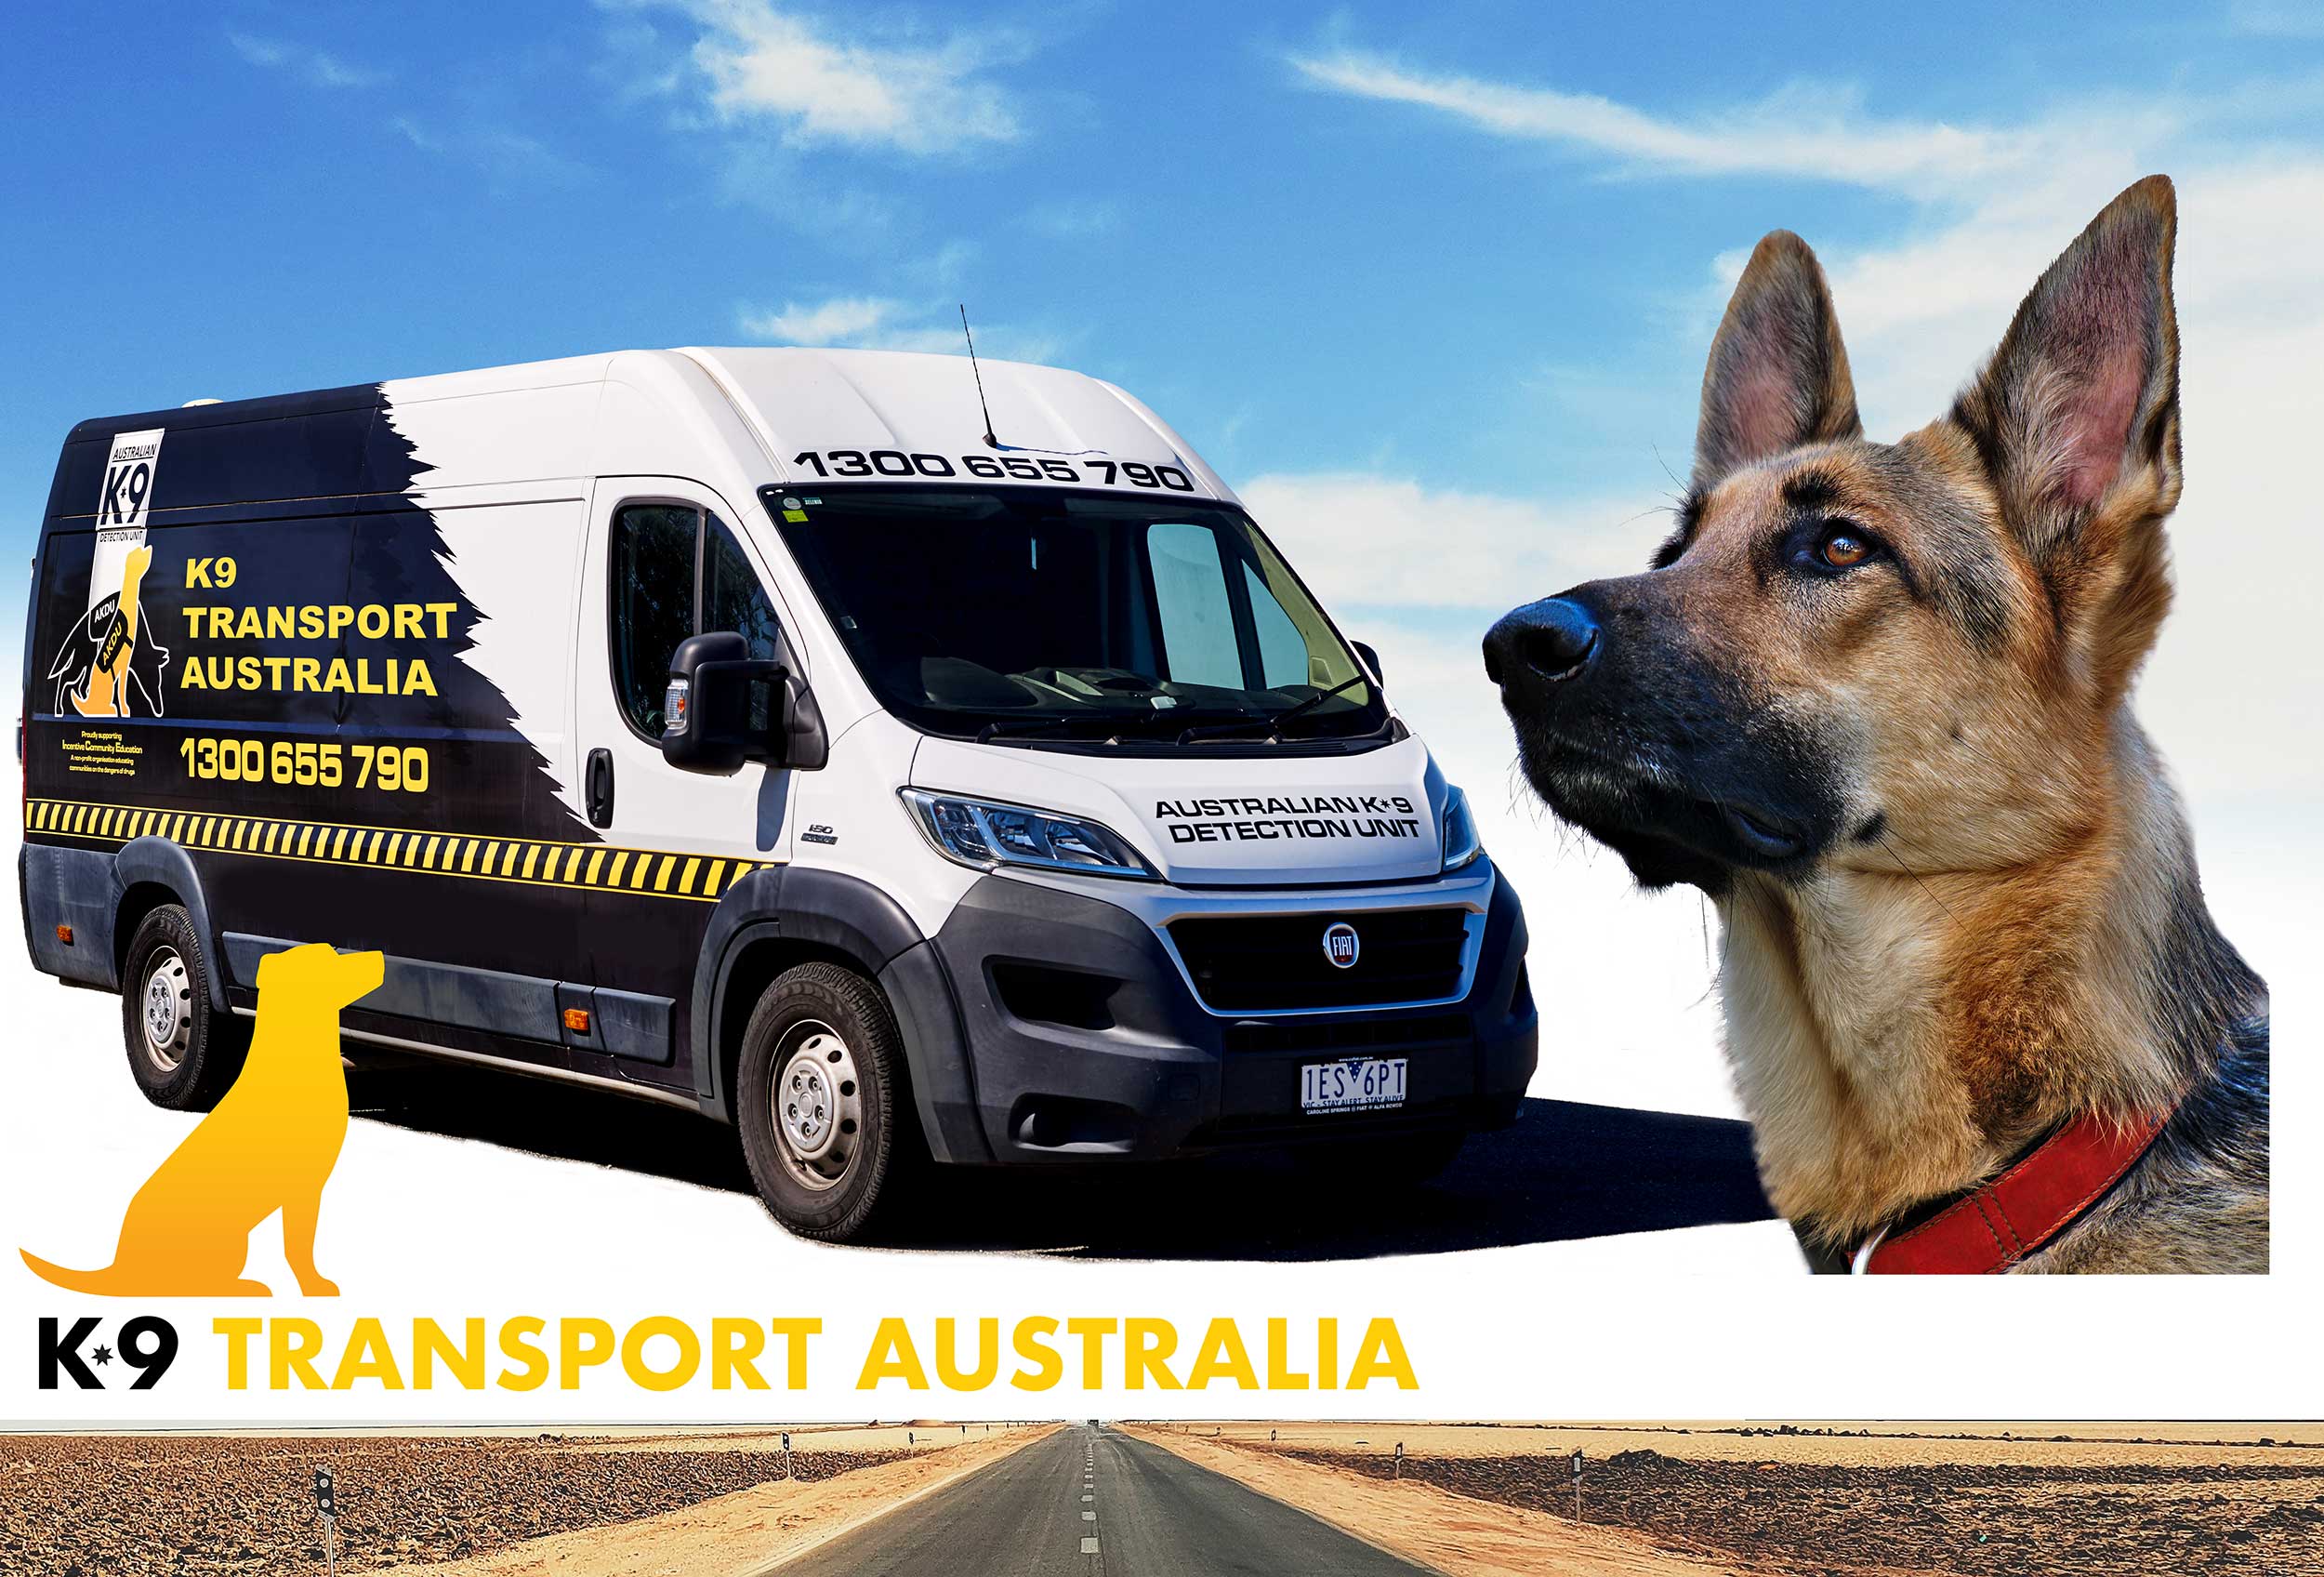 K9 Transport Australia